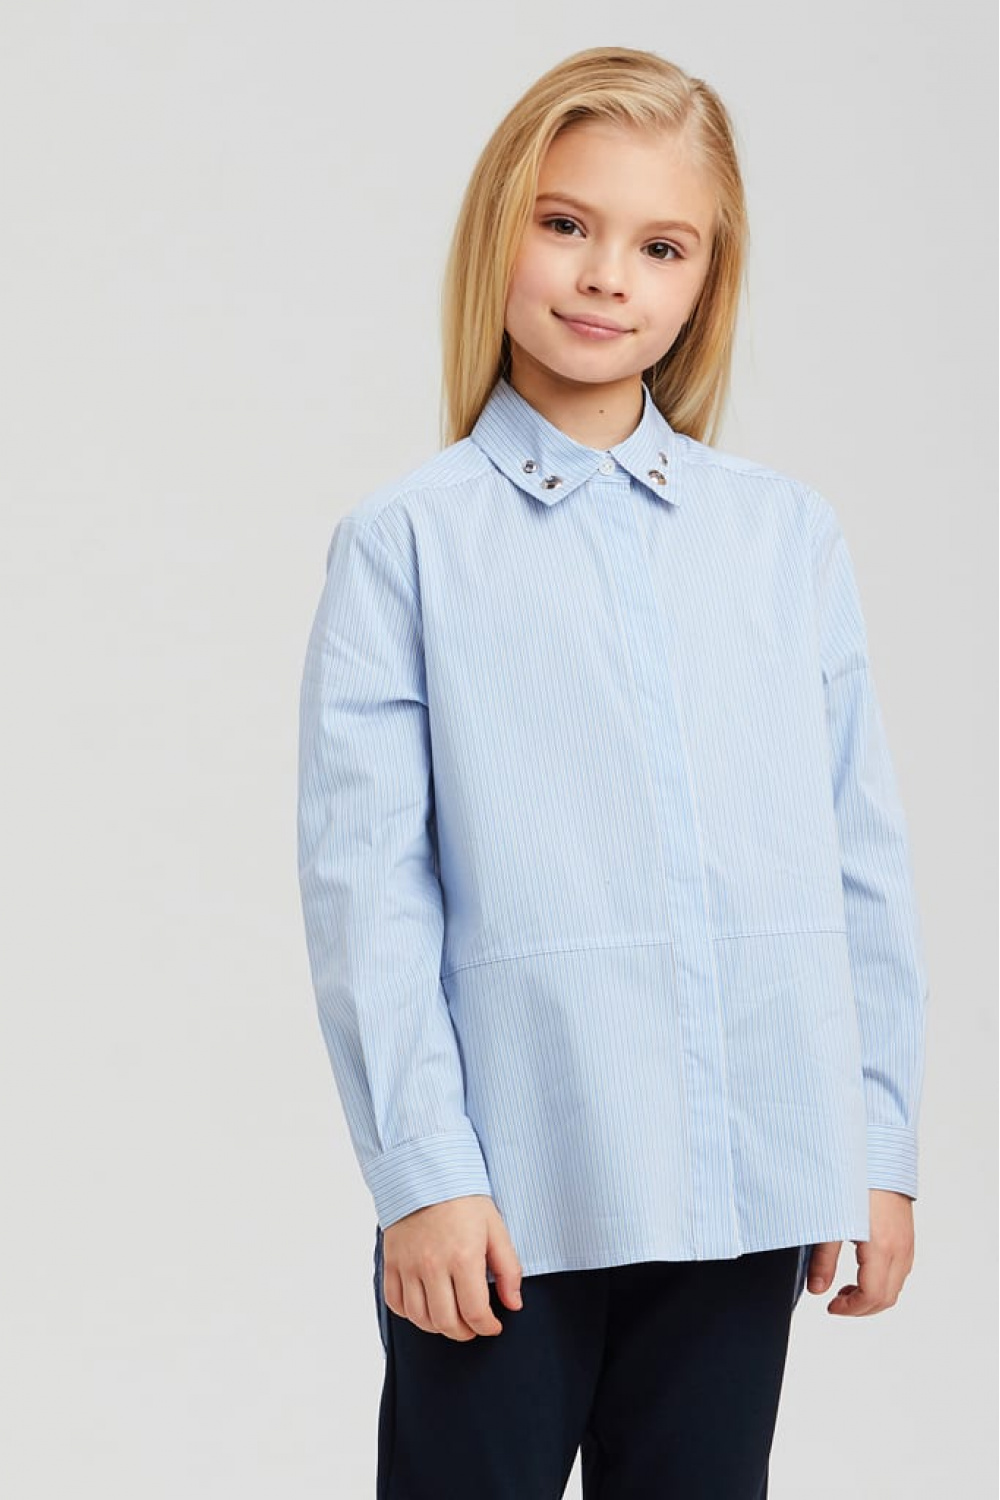 Хлопковая рубашка с декором воротничка (SSFSG-029-23016-364) Silver Spoon